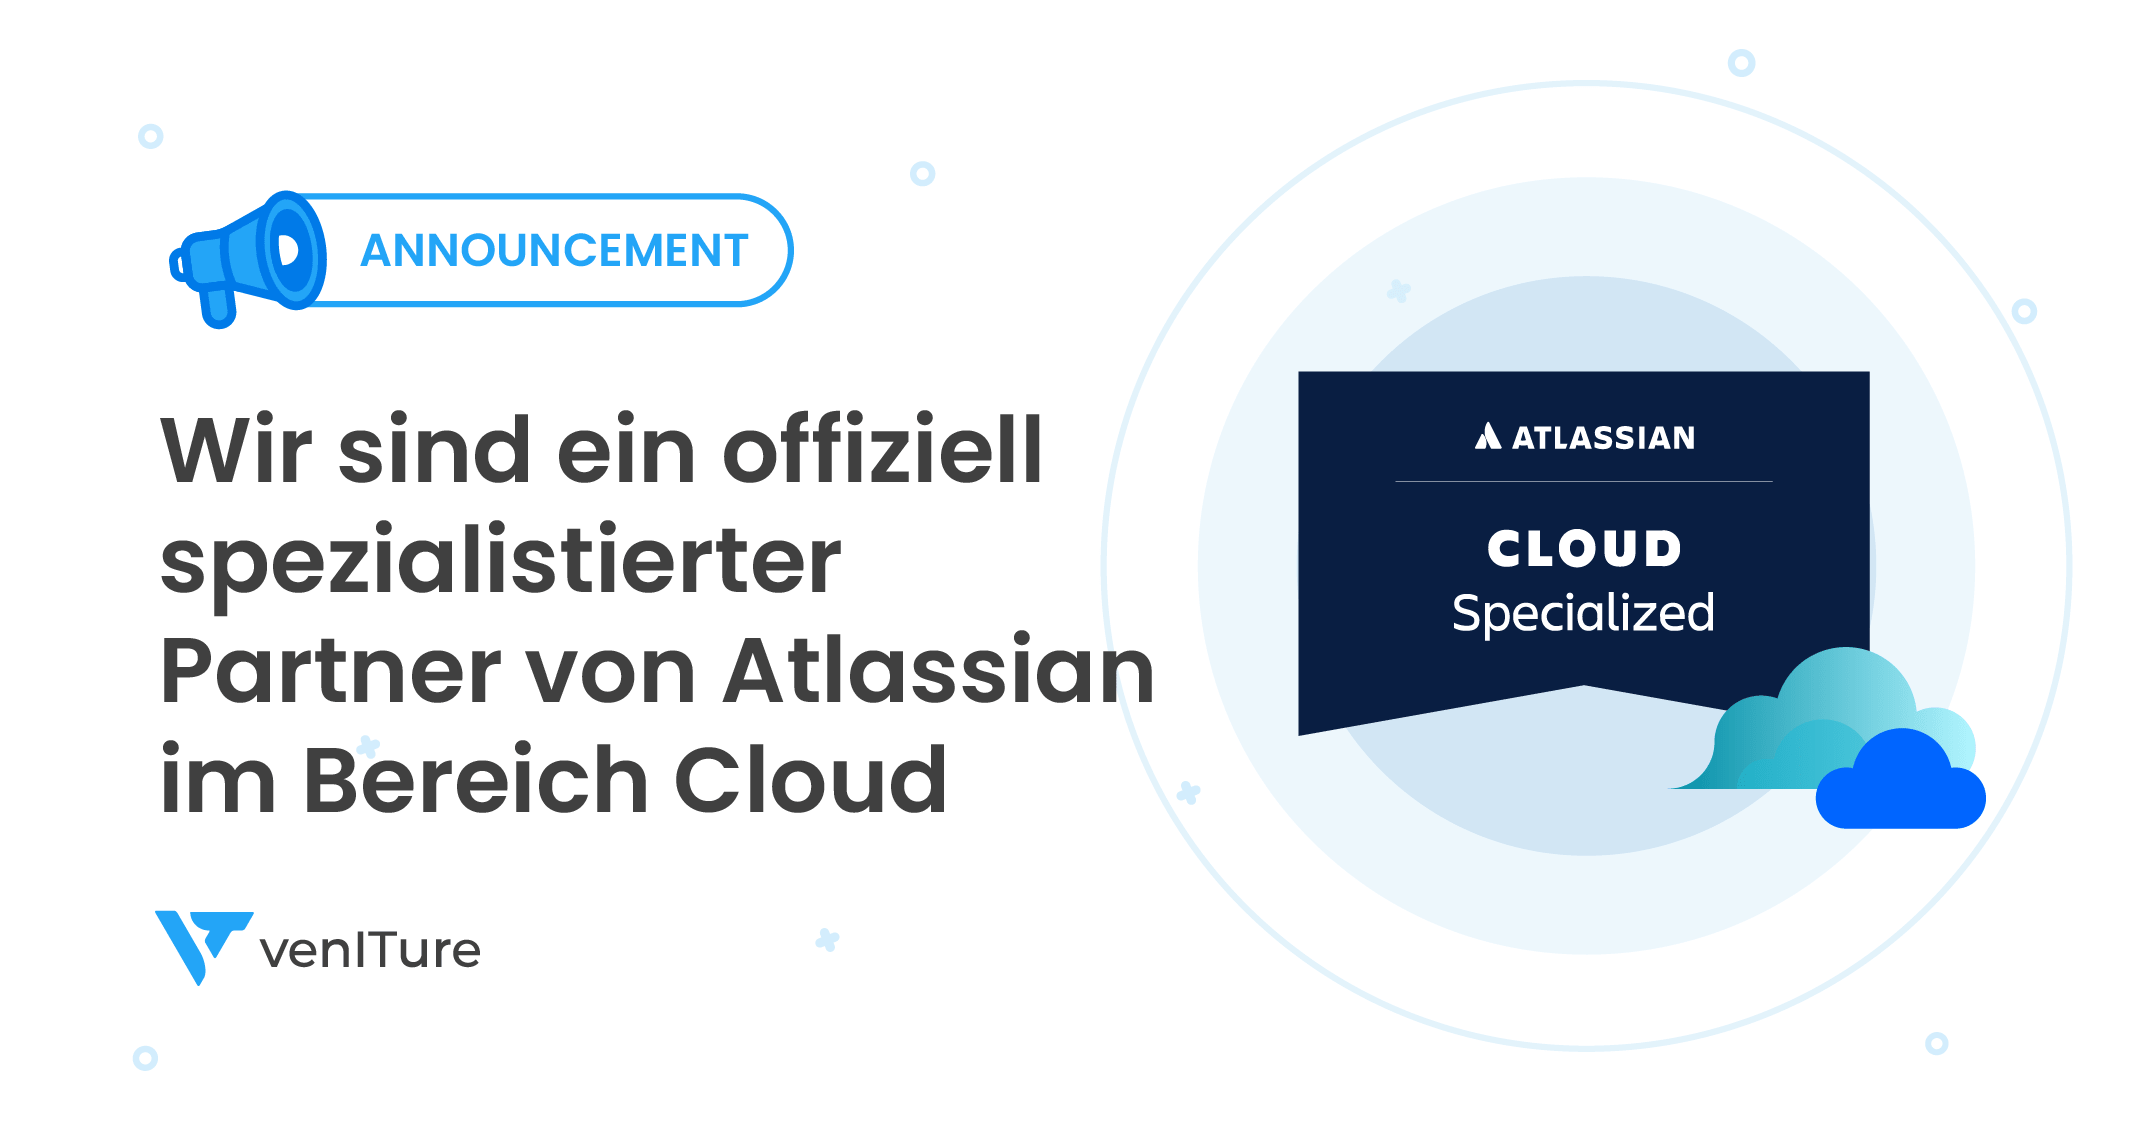 venITure ist offiziell Atlassian Cloud spezialisiert!